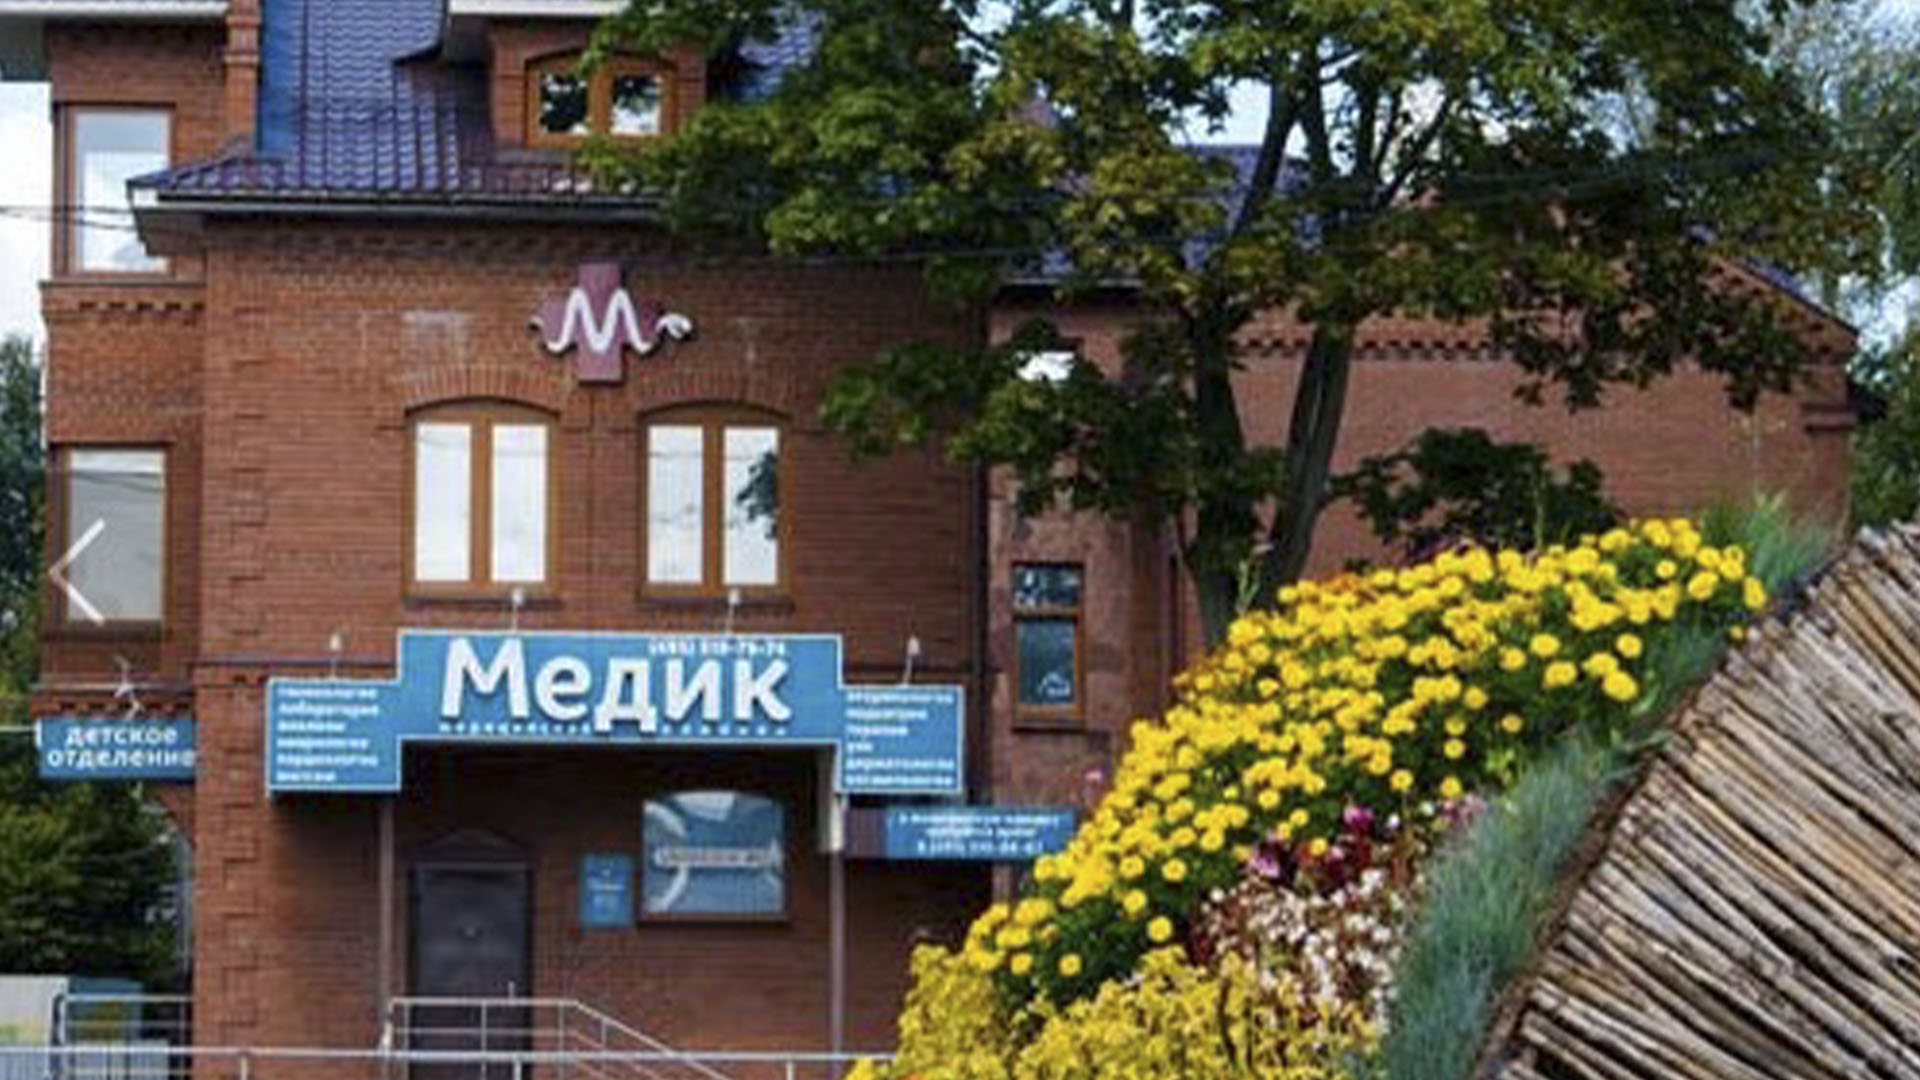 Медцентр "Медик" на Станционной улице в Болшево.